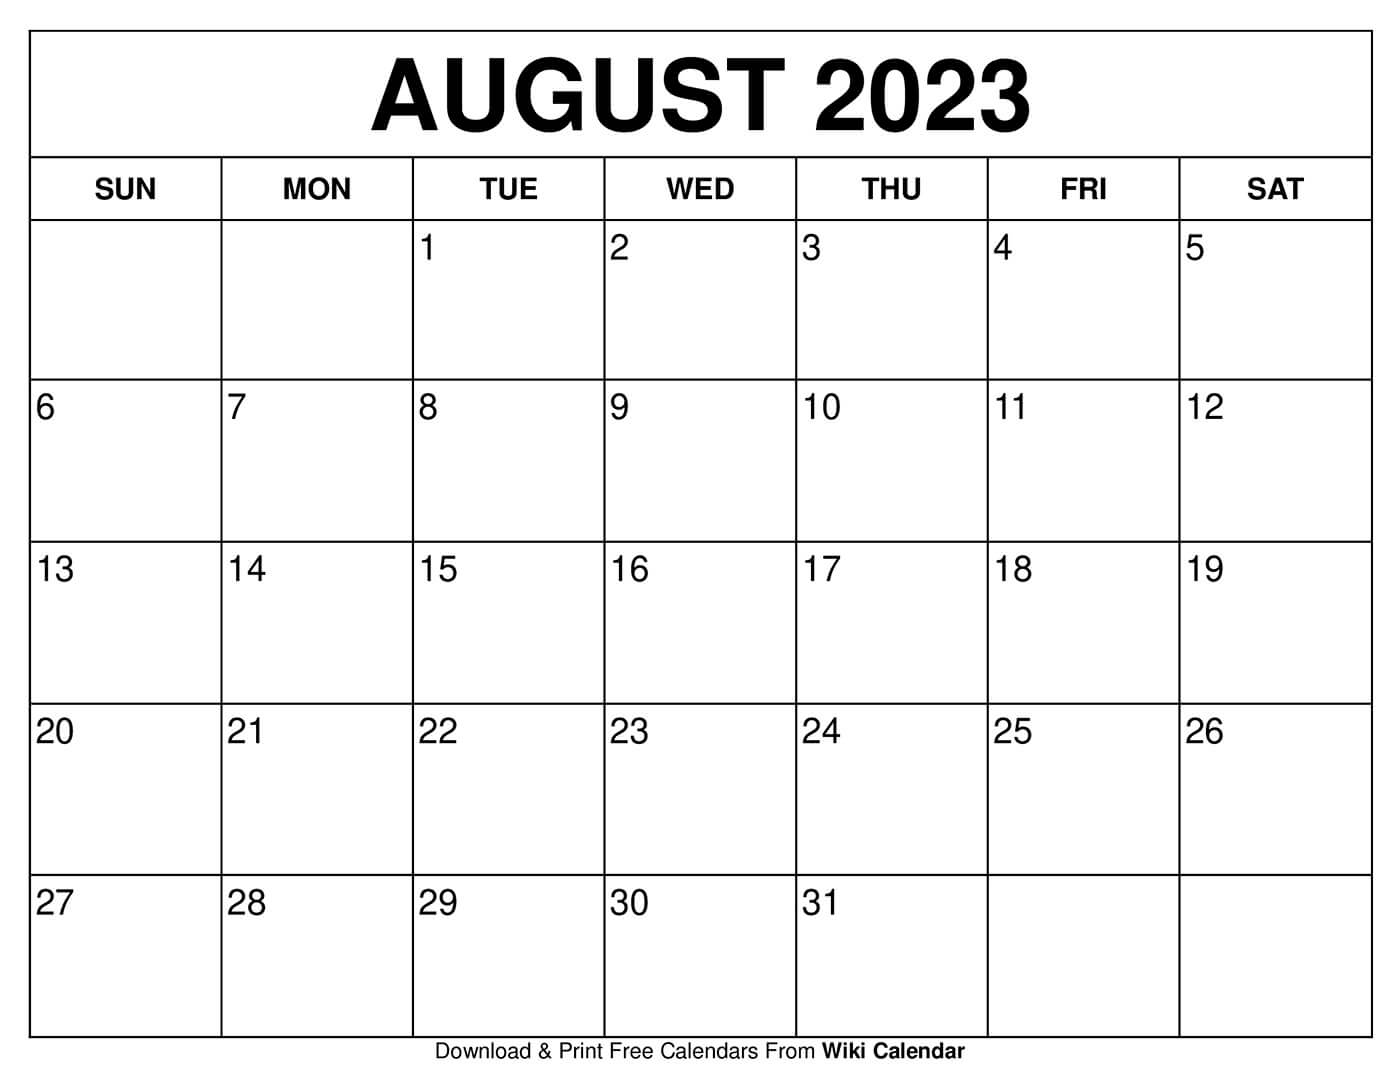 Summer 2022 Calendar Template Free Printable August 2022 Calendars - Wiki Calendar